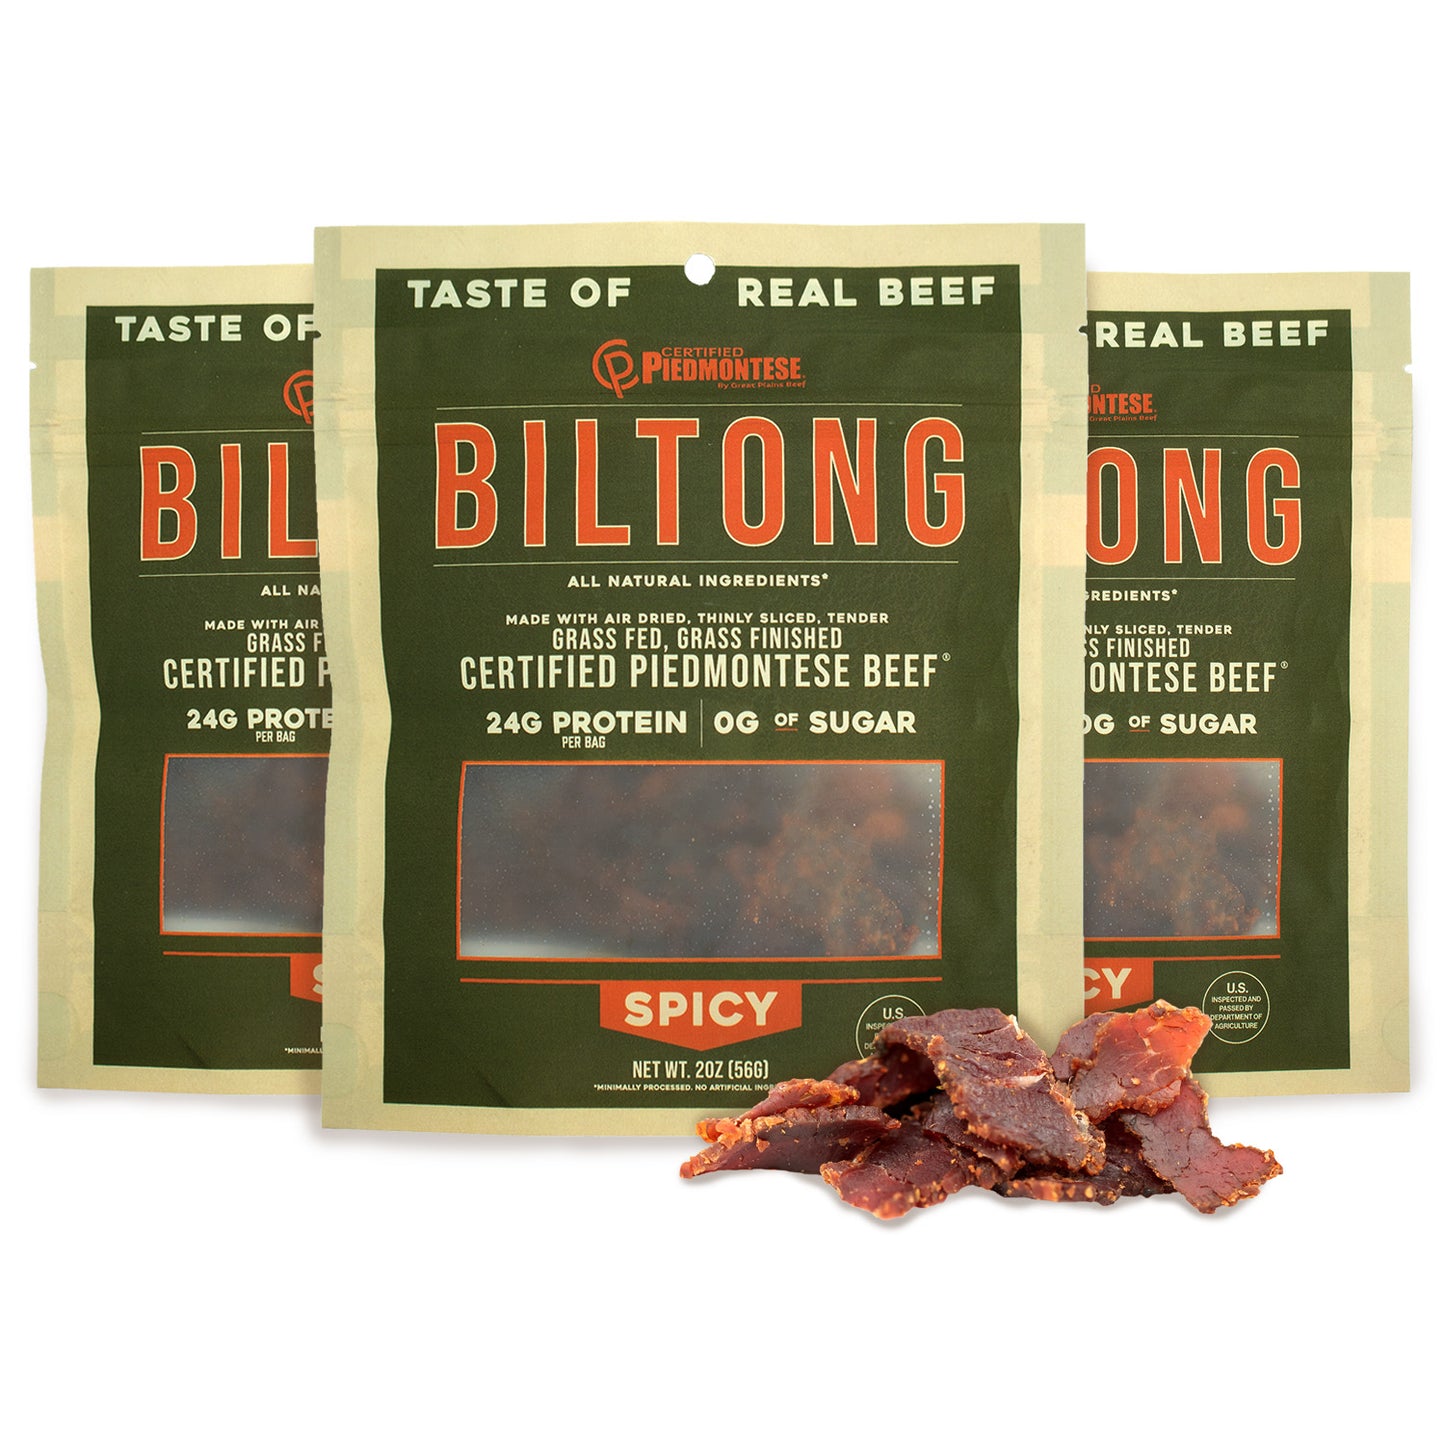 
                  
                    2 Spicy Beef Biltong (2oz.)
                  
                